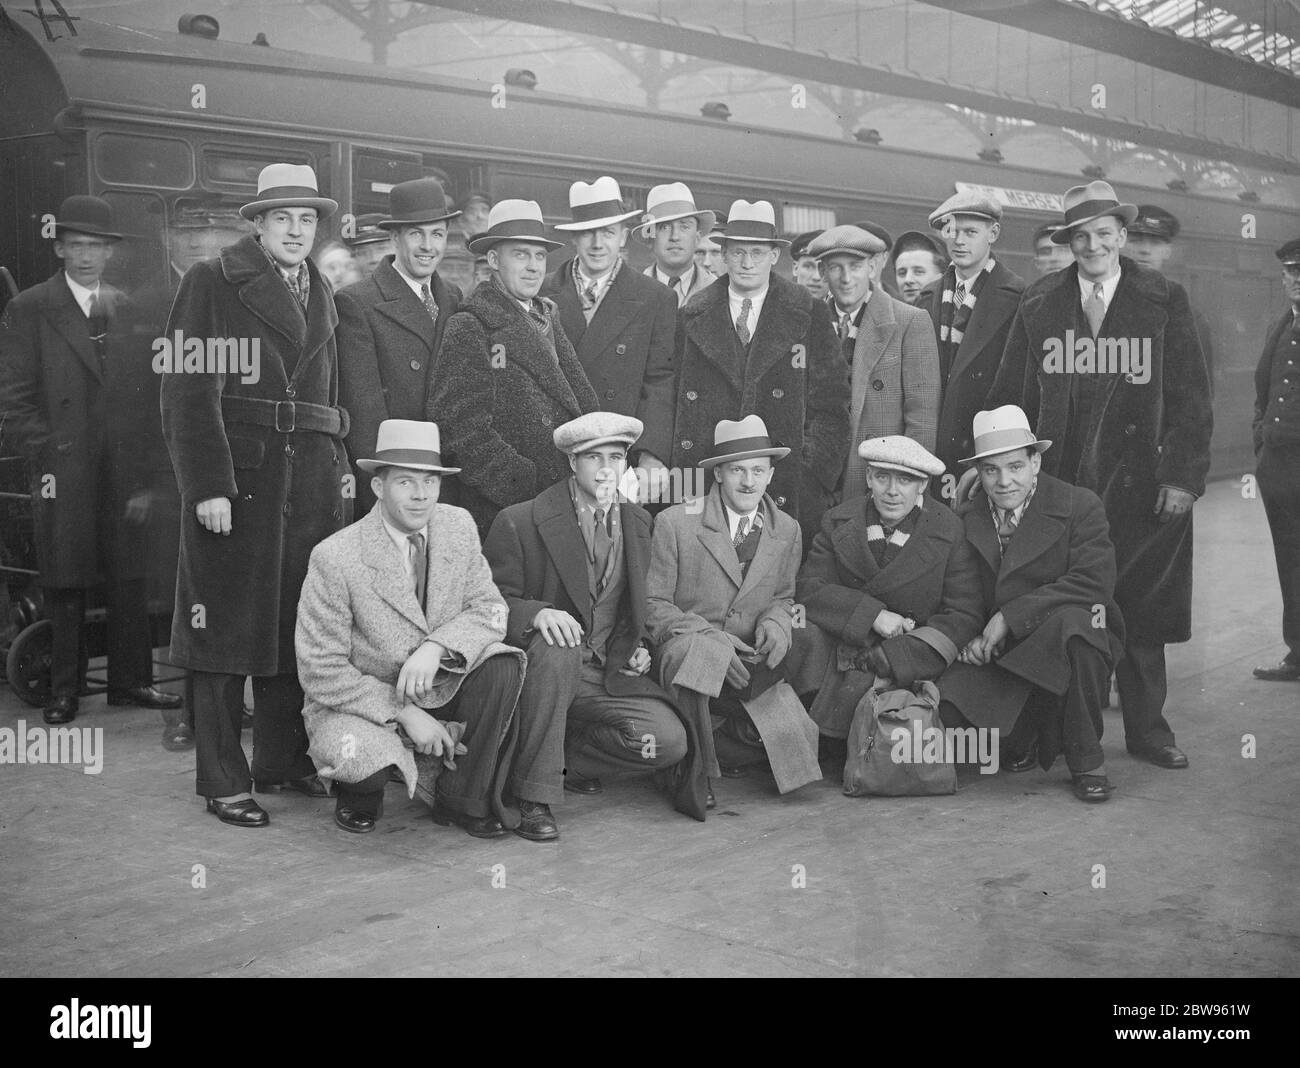 Siegreiche kanadische Eishockey-Team Ankunft in London. Die kanadische Eishockey-Team, das eine englische Mannschaft in Liverpool von neun Toren zu fünf geschlagen kam in London, um eine weitere Reihe von Spielen zu spielen. Das Team bei der Ankunft am Bahnhof Euston. 29. November 1932 Stockfoto